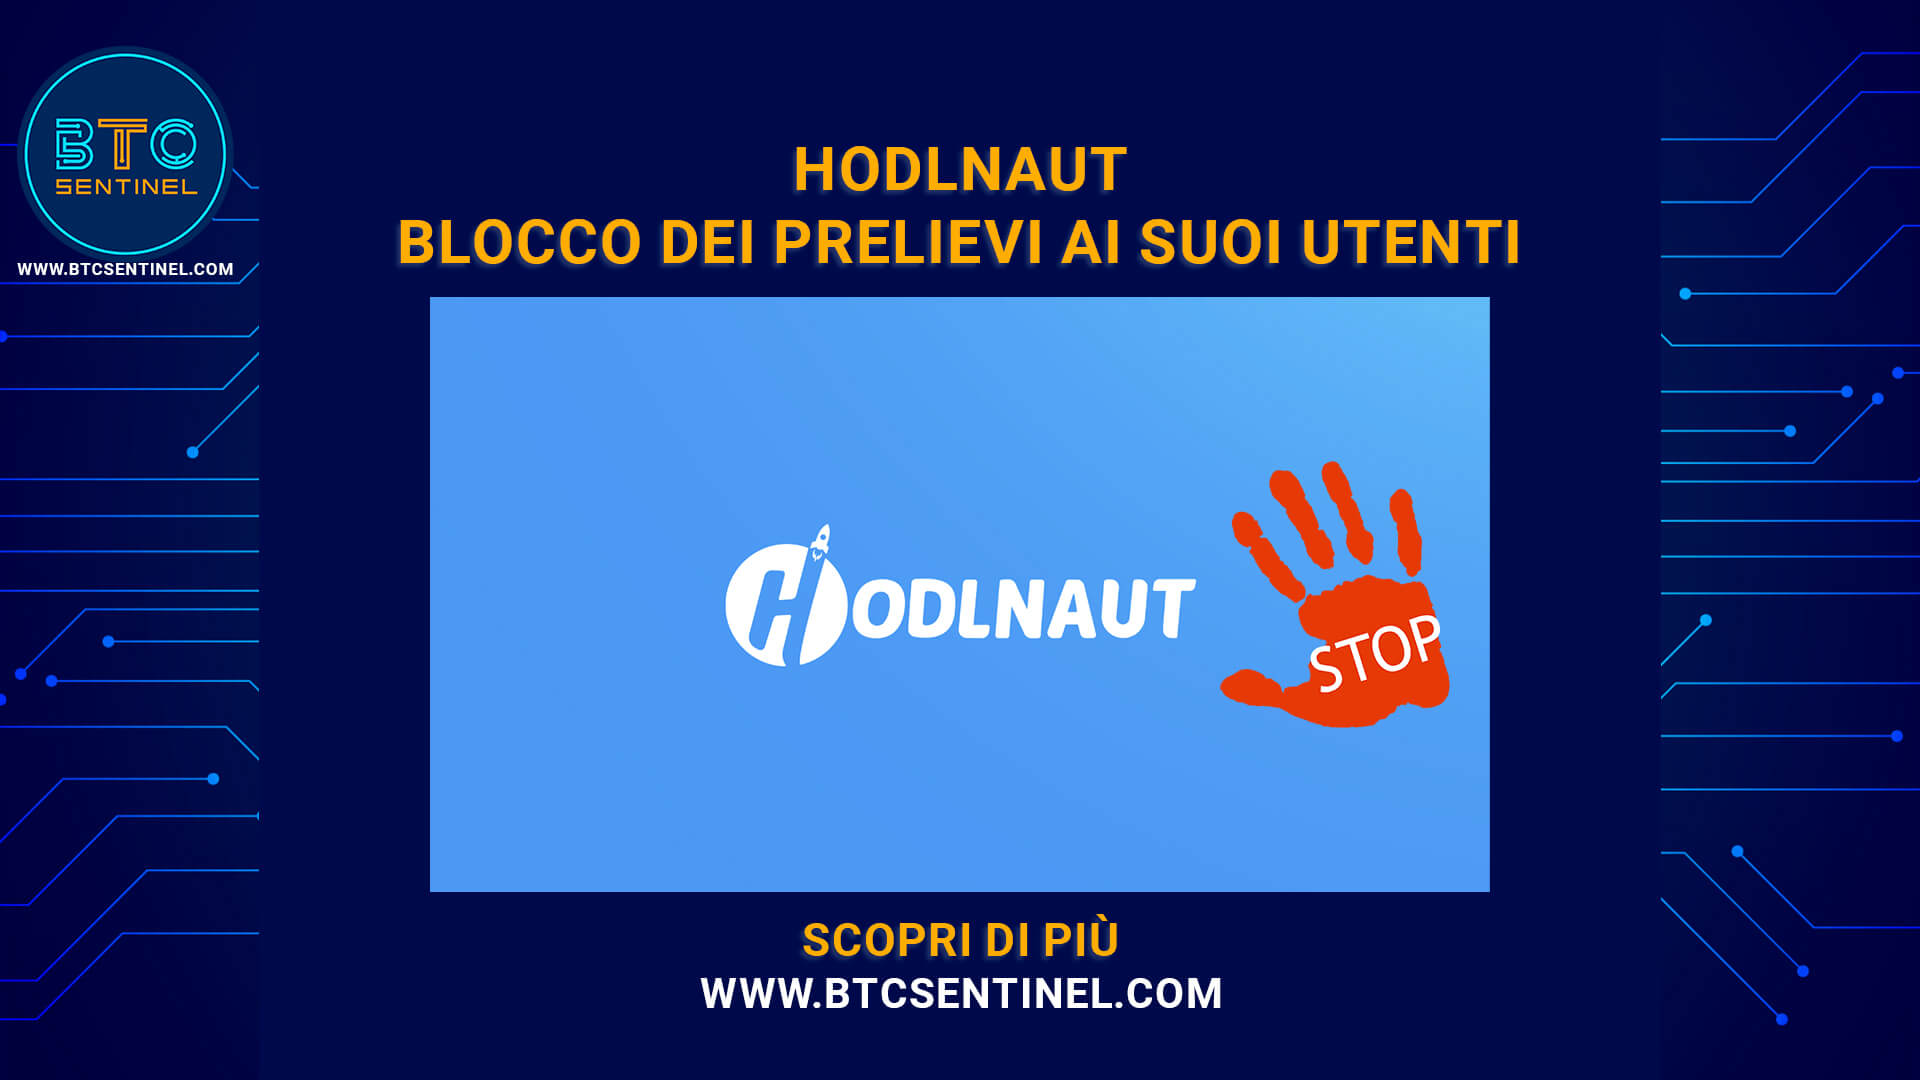 Hodlnaut annuncia il blocco dei prelievi ai suoi utenti